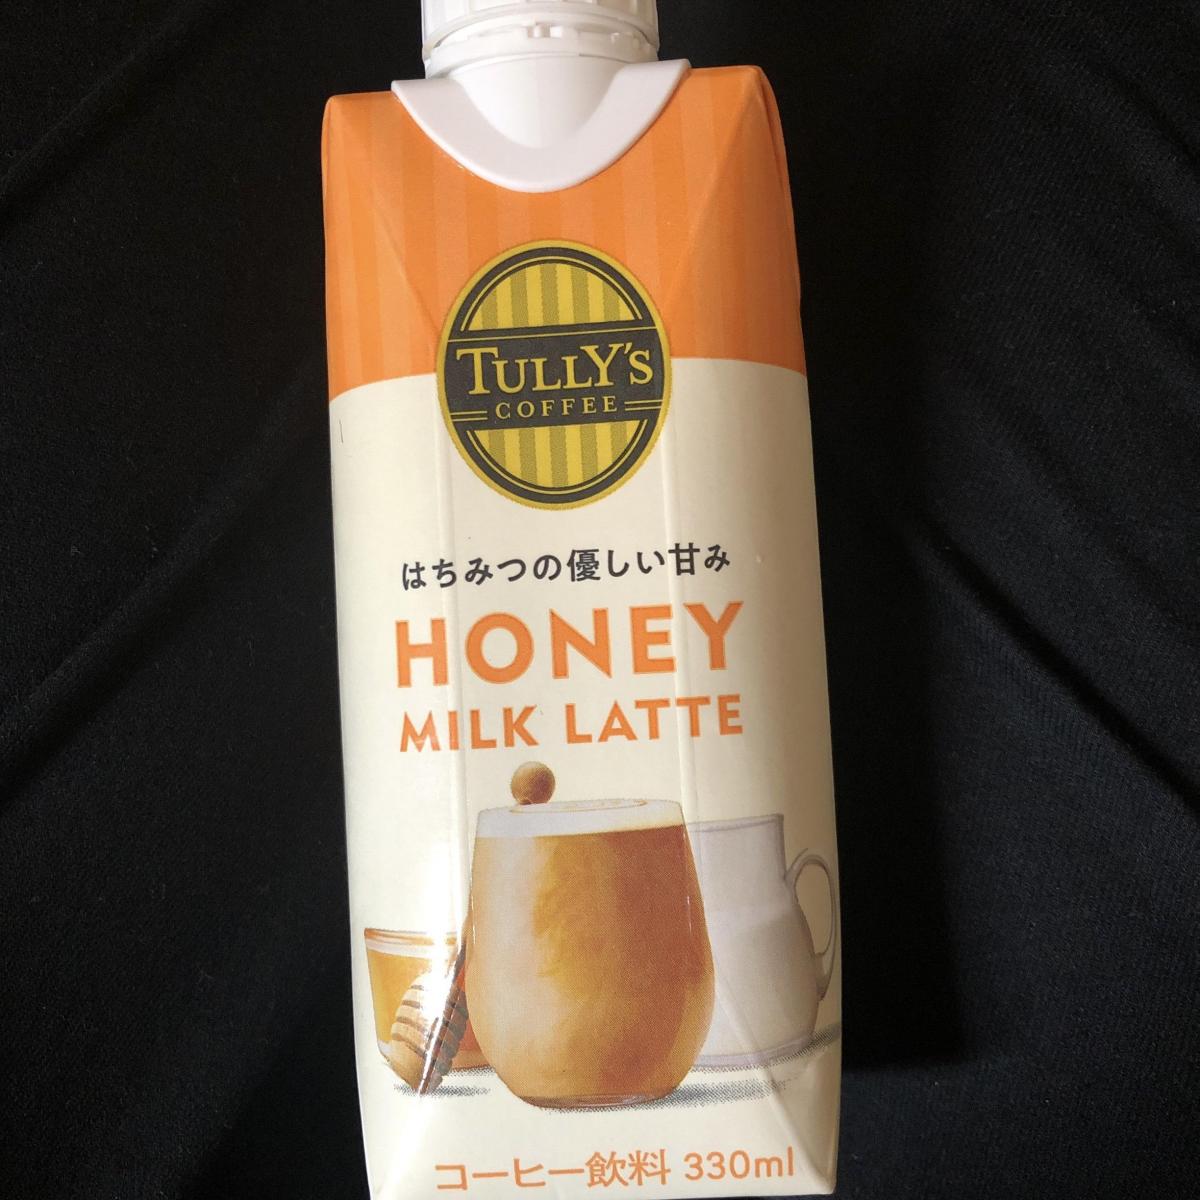 伊藤園 TULLY'S COFFEE（タリーズコーヒー） HONEY MILK LATTEの商品ページ